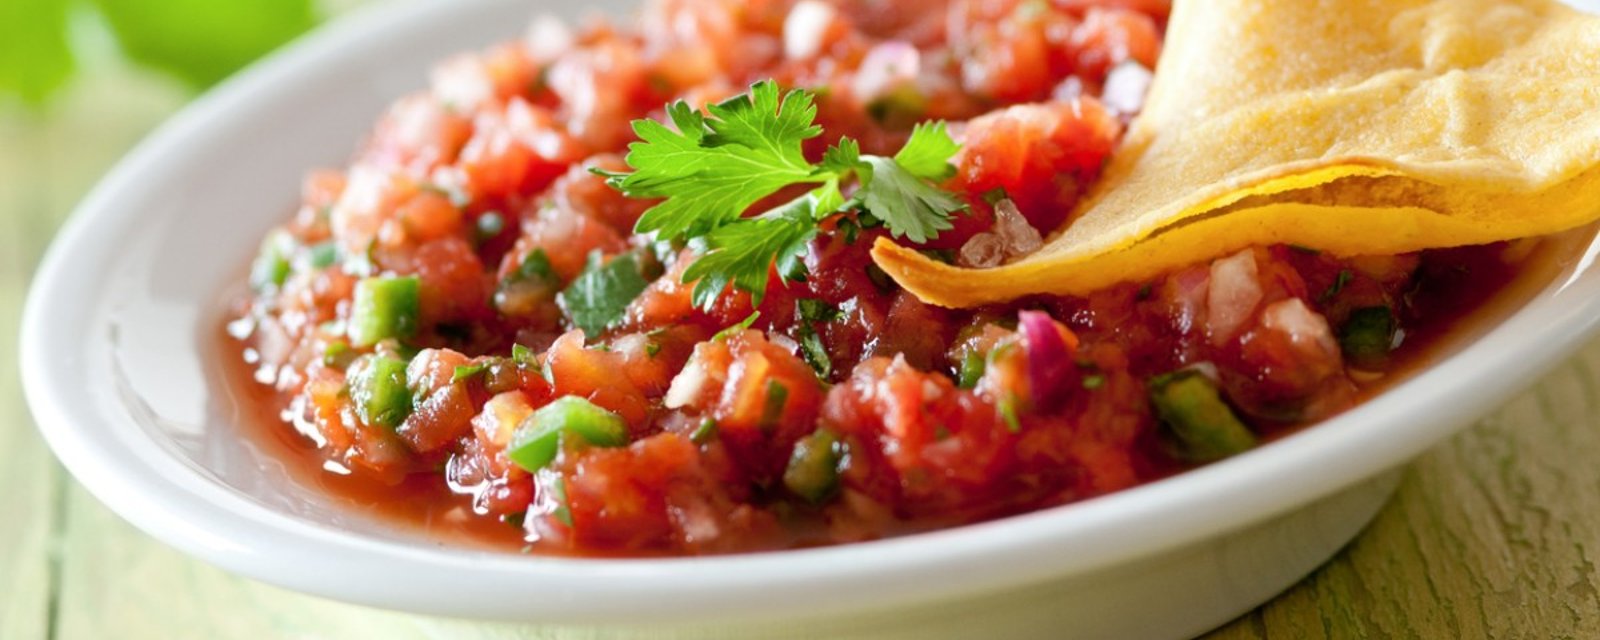 Coup de ❤ pour la salsa maison aux légumes rôtis... La meilleure façon de la réaliser!